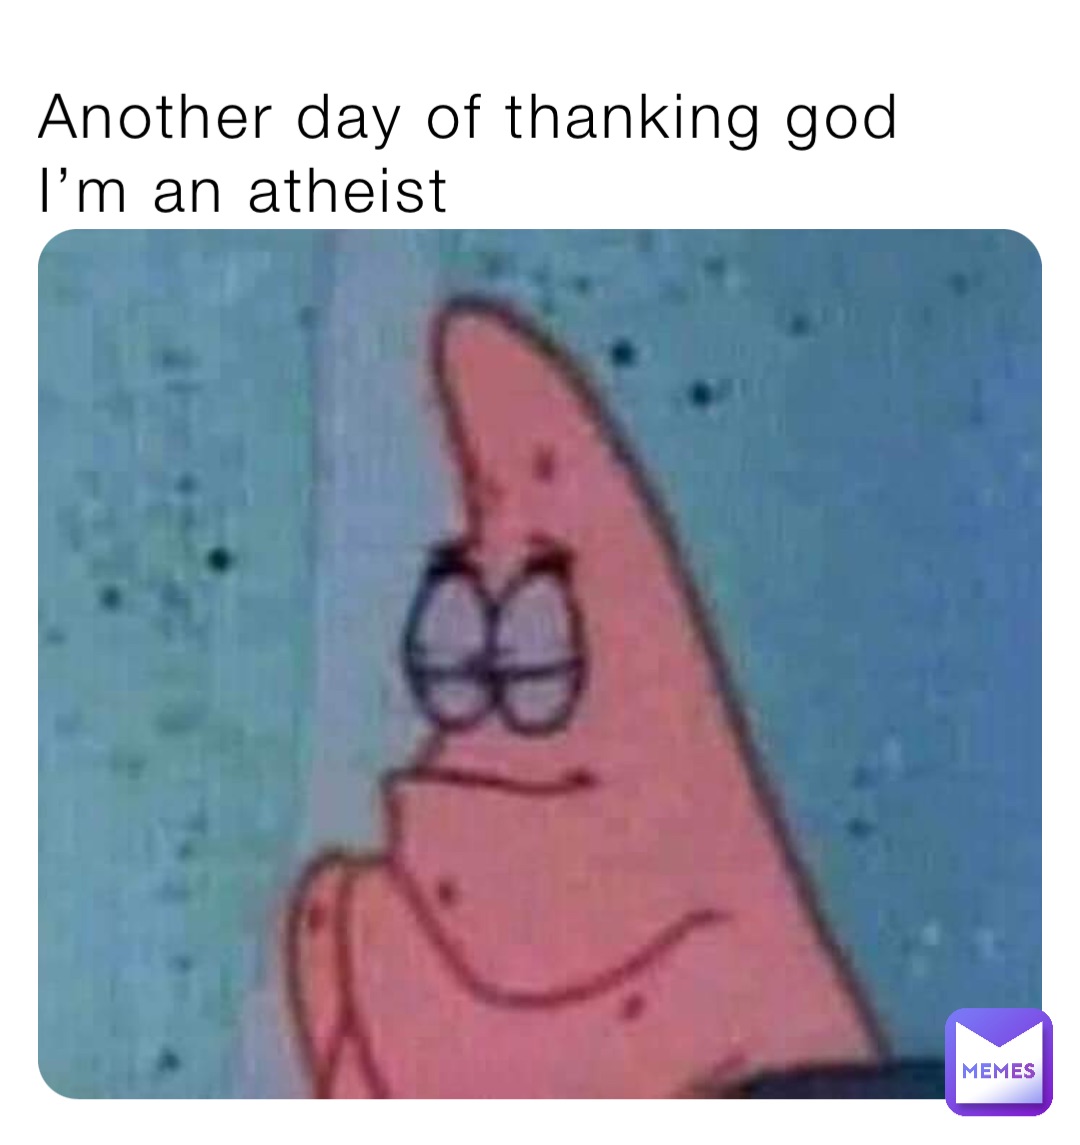 willy wonka atheist meme